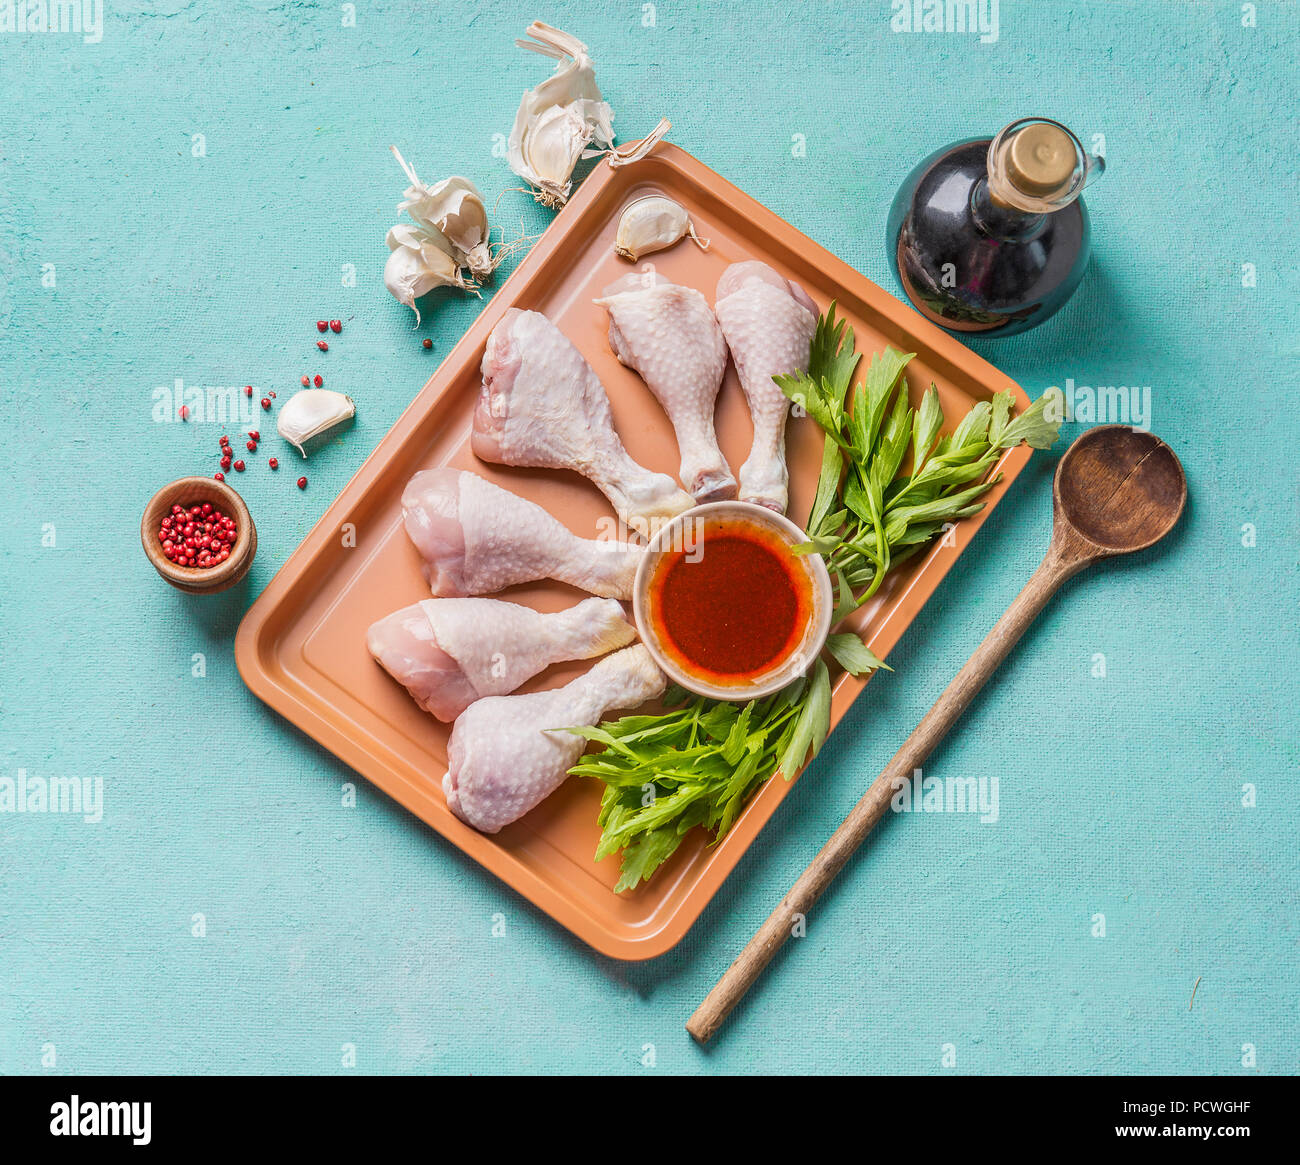 Kochen Vorbereitung von Rohstoffen Chicken Drumsticks. Raw Hähnchenschenkel  auf Platte mit Kräutern, Gewürzen, Soße und Kochlöffel auf hellblauem  Hintergrund, oben vi Stockfotografie - Alamy